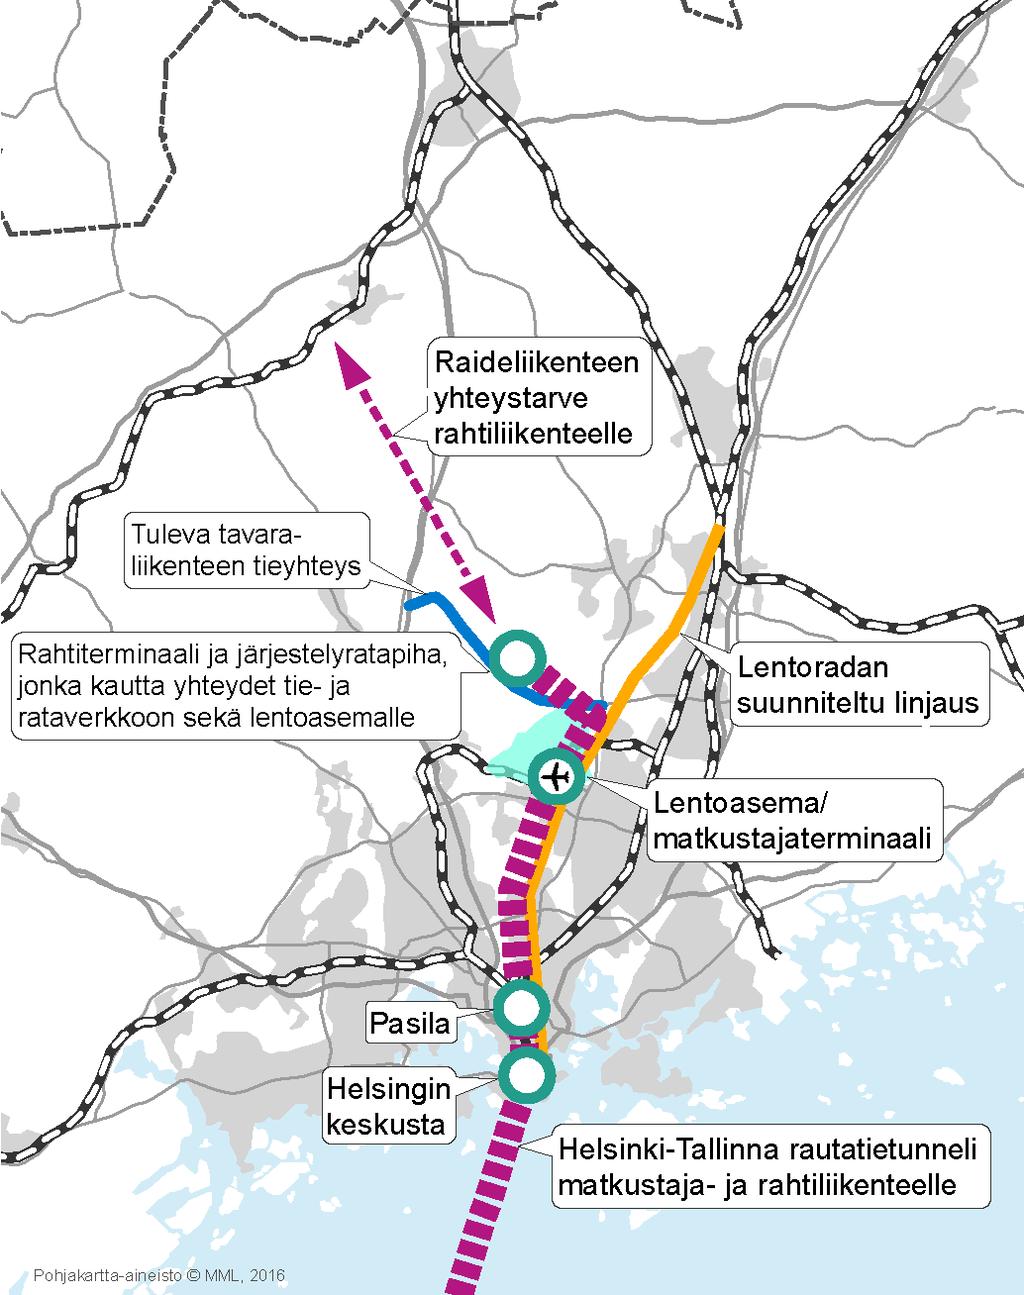 Tallinna-tunneli selvitykset FinEst Link -hankkeessa rautatietunnelia tutkittiin teknisestä, taloudellisesta ja kilpailukyvyn näkökulmista.